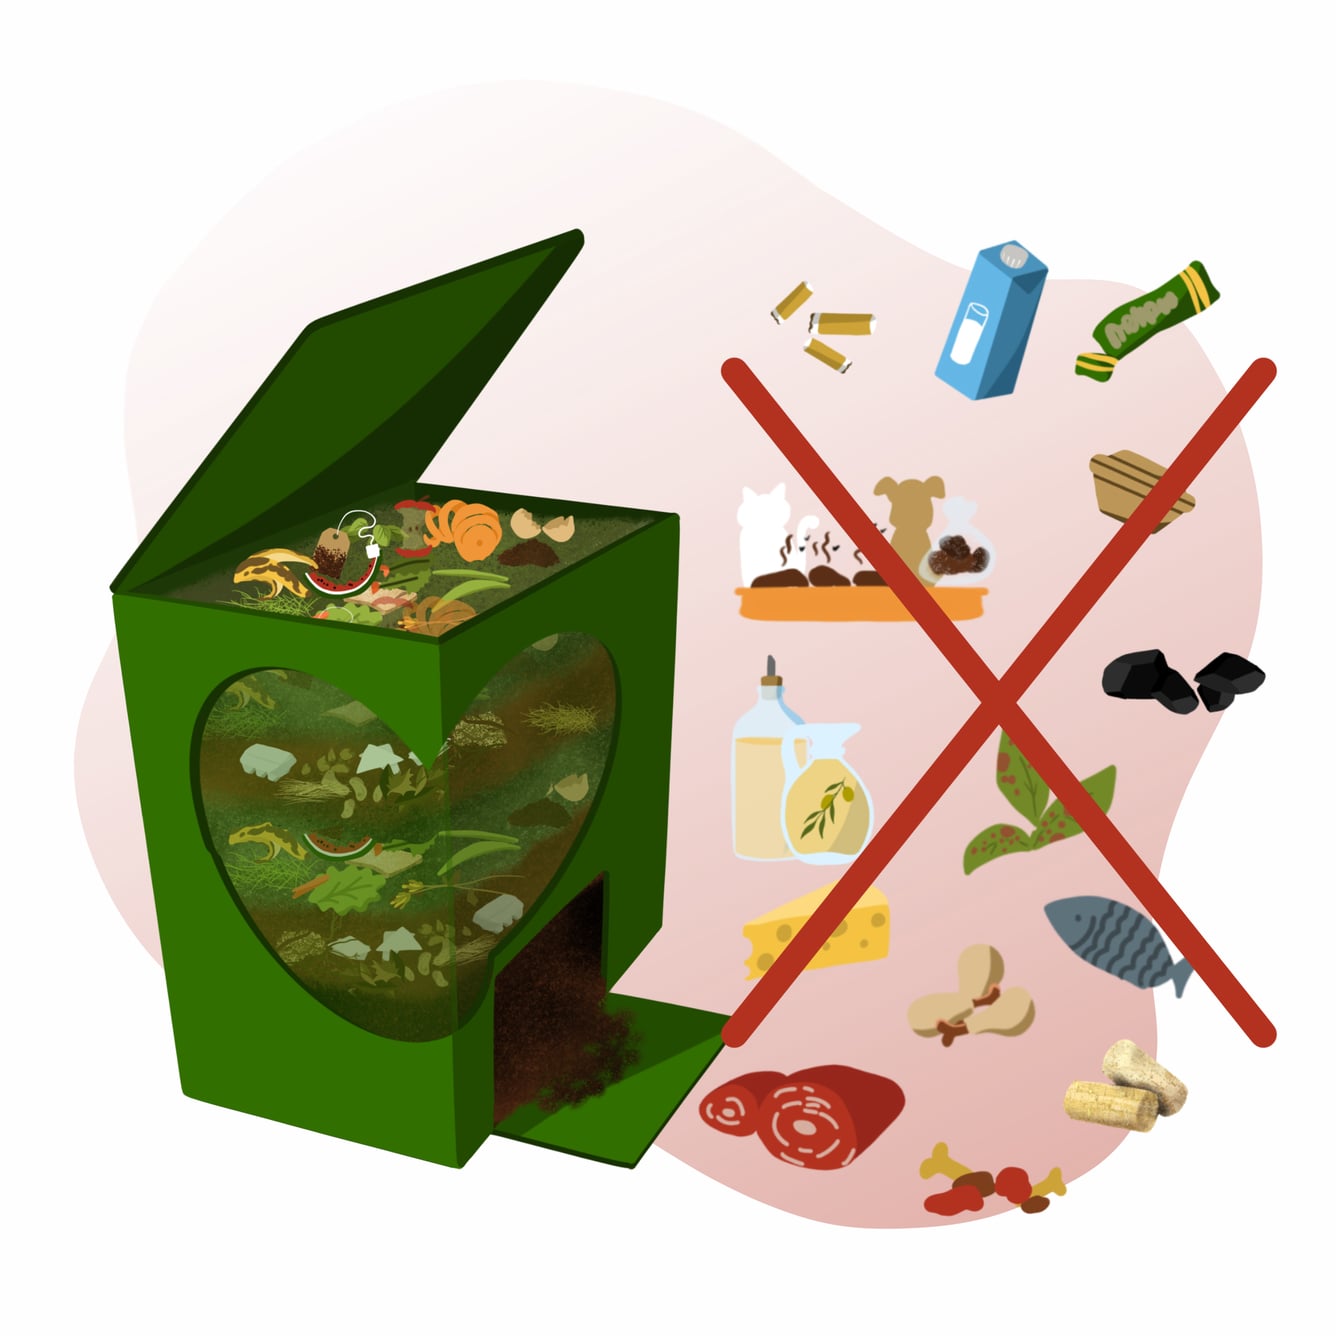 Ilustração de caixote de compostagem em casa com indicação do que não colocar: pontas de cigarro, embalagens, fezes de animais, gorduras, carne e peixe, sobras de comida confecionada, cortiça.